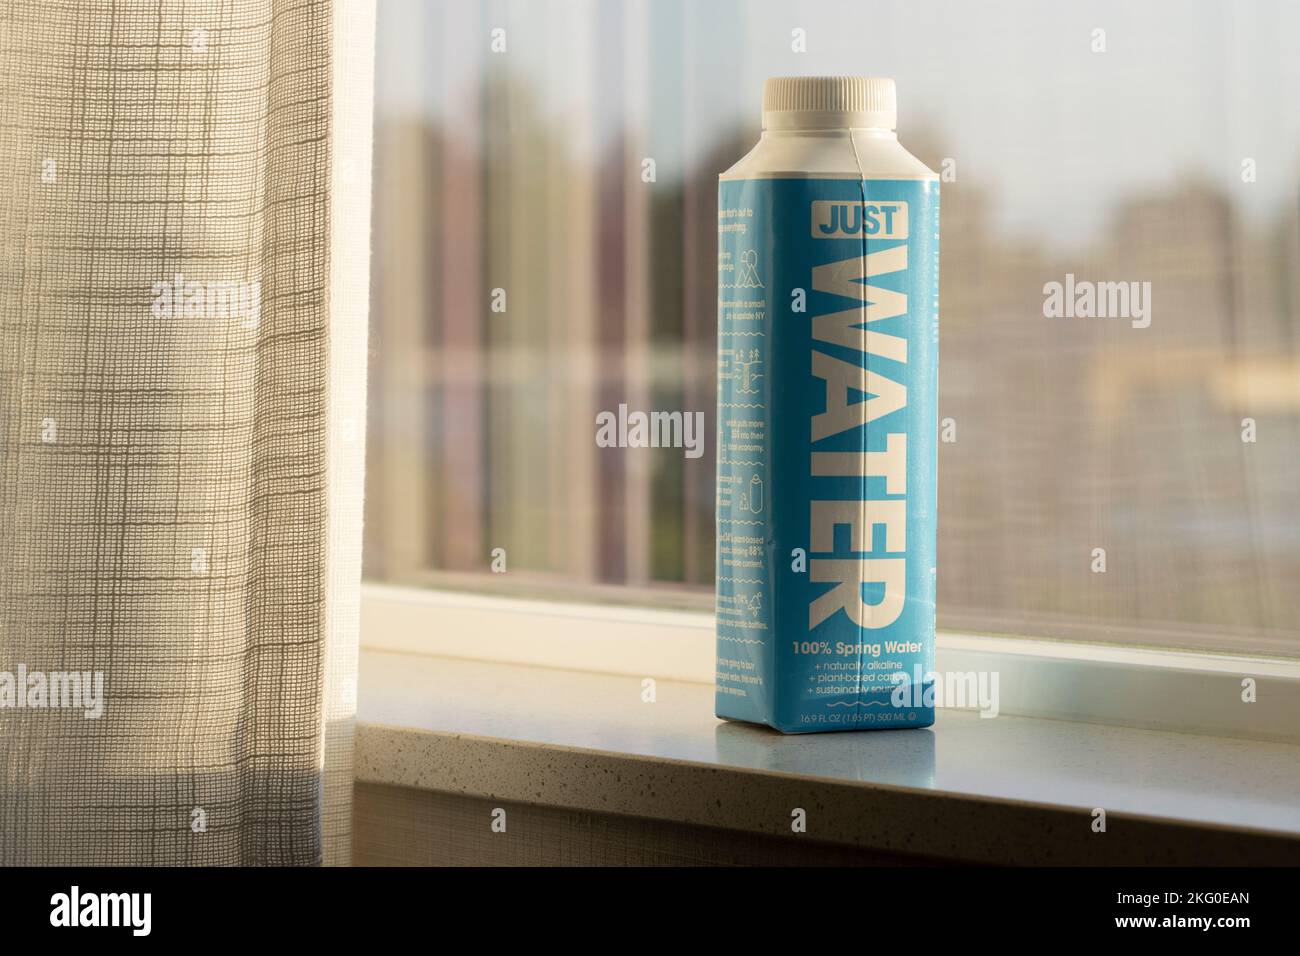 Gros plan d'une bouteille d'eau juste sur un rebord de fenêtre. La société affirme que le produit est de l'eau de source naturelle de montagne provenant du Montana. Banque D'Images